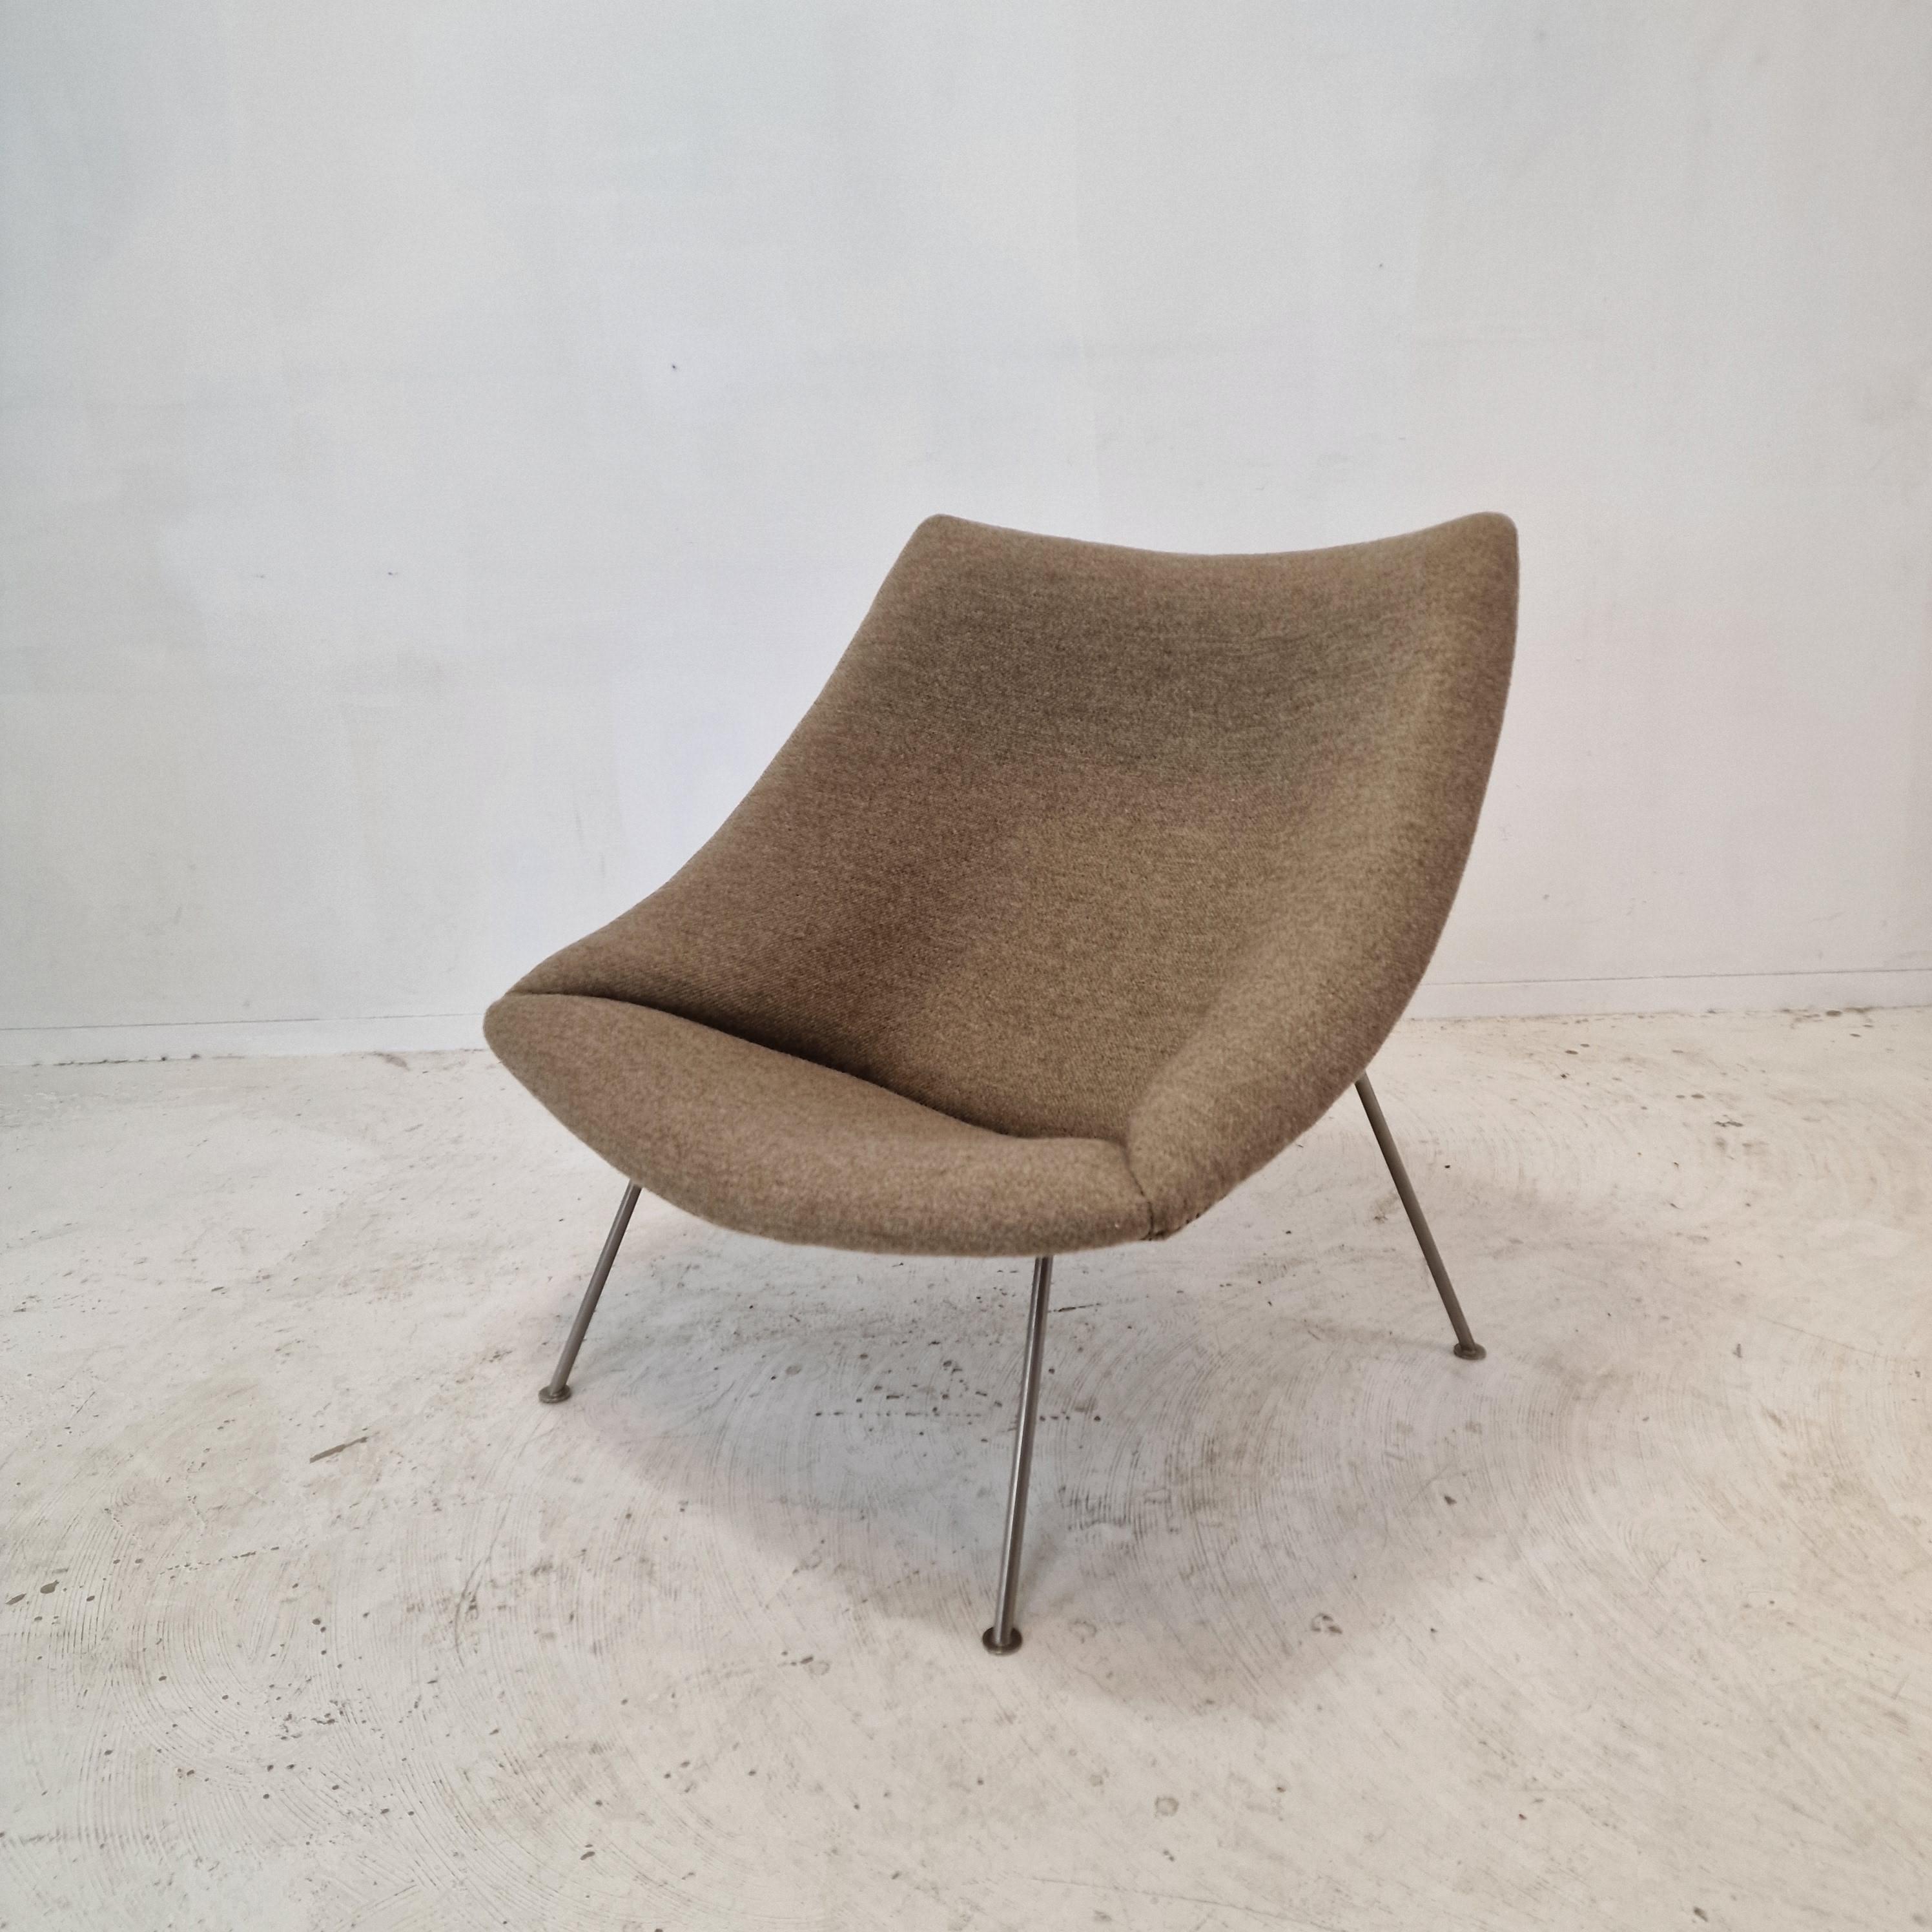 Une belle chaise Artifort Oyster.  

Cette chaise très confortable est conçue par Pierre Paulin et fabriquée par Artifort.  
Cette pièce particulière a été fabriquée dans les années 60 et possède des pieds en métal nickelé.

Il vient d'être restauré